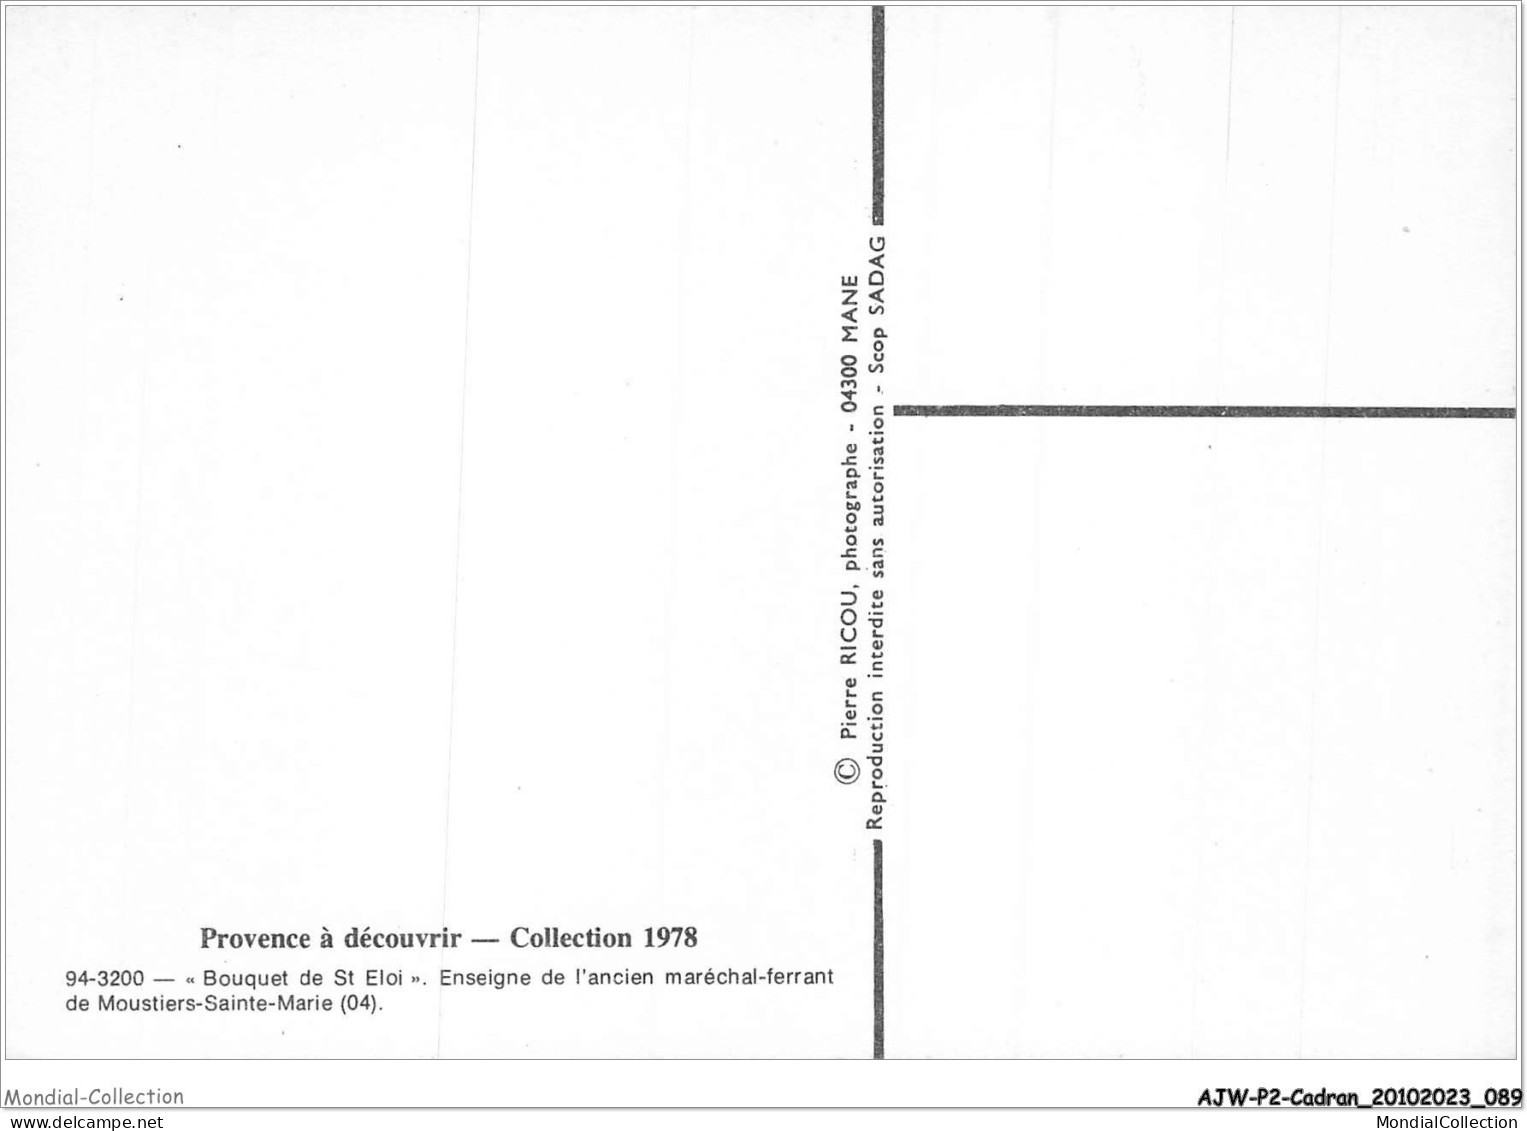 AJWP2-0166 - CADRAN-SOLAIRE - BOUQUET DE ST ELOI - ENSEIGNE DE L'ANCIEN MARECHAL-FERRANT DE MOUSTIERS-SAINTE-MARIE - Astronomy